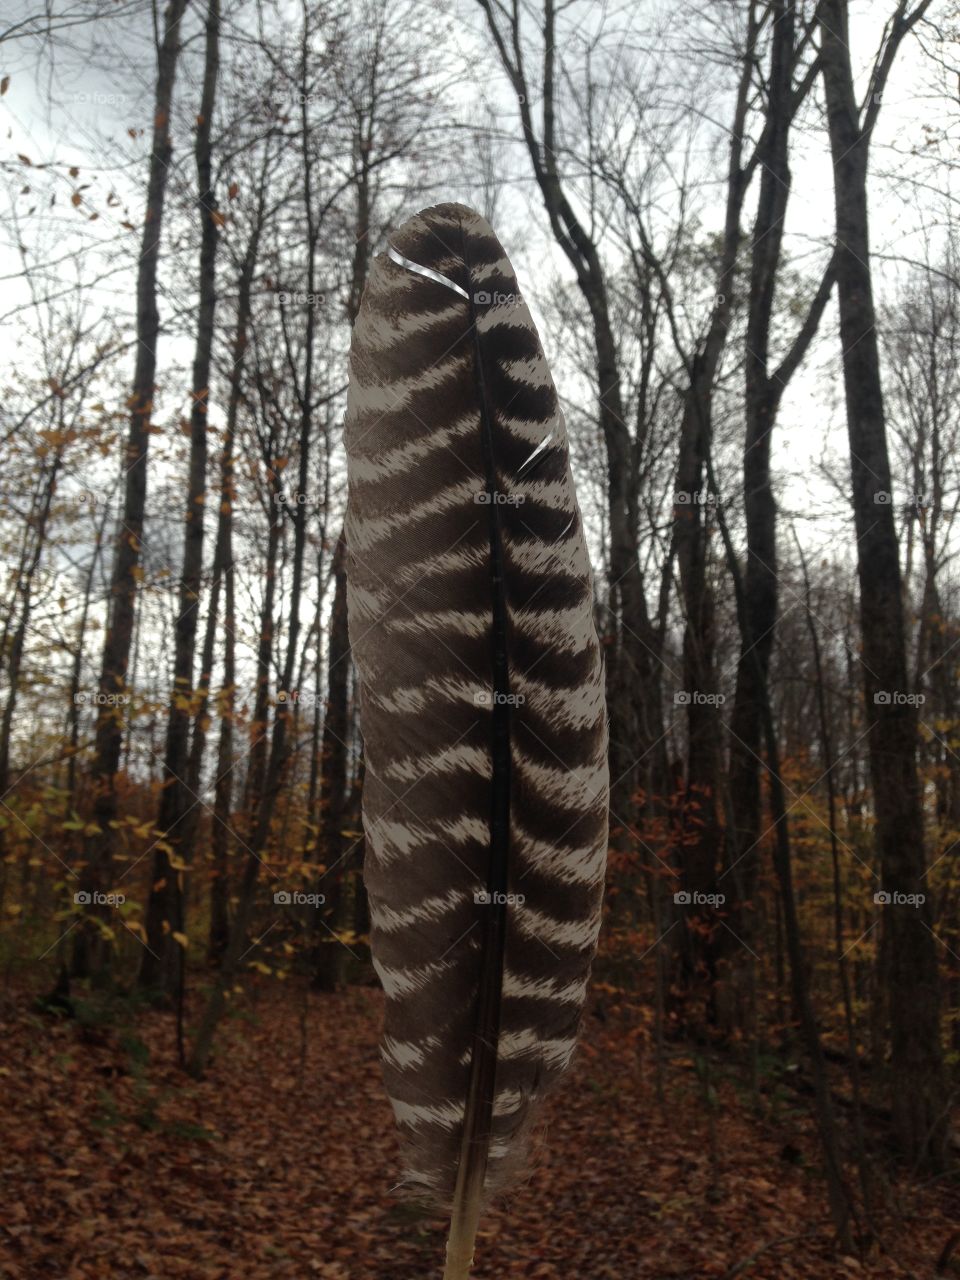 Wild turkey feather in the wild